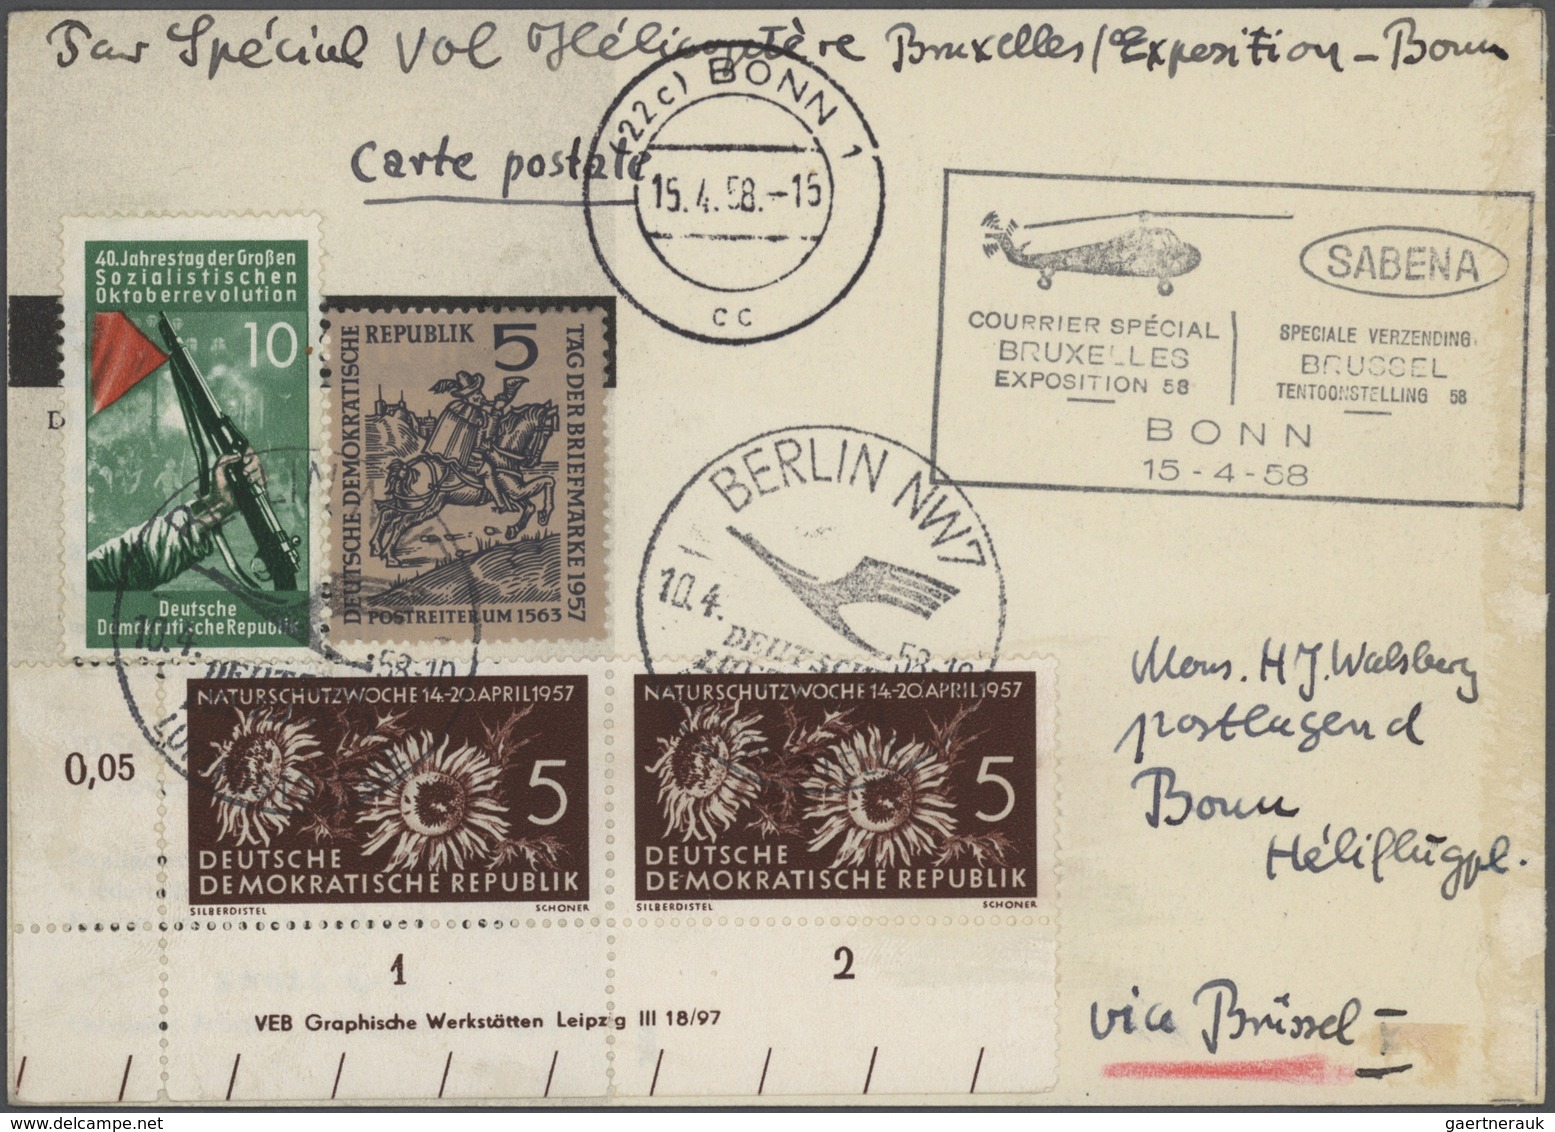 24812 Flugpost Deutschland: 1956 - 1980 (ca.), DDR, Posten von über 570 speziellen Flugbelegen, sehr viele